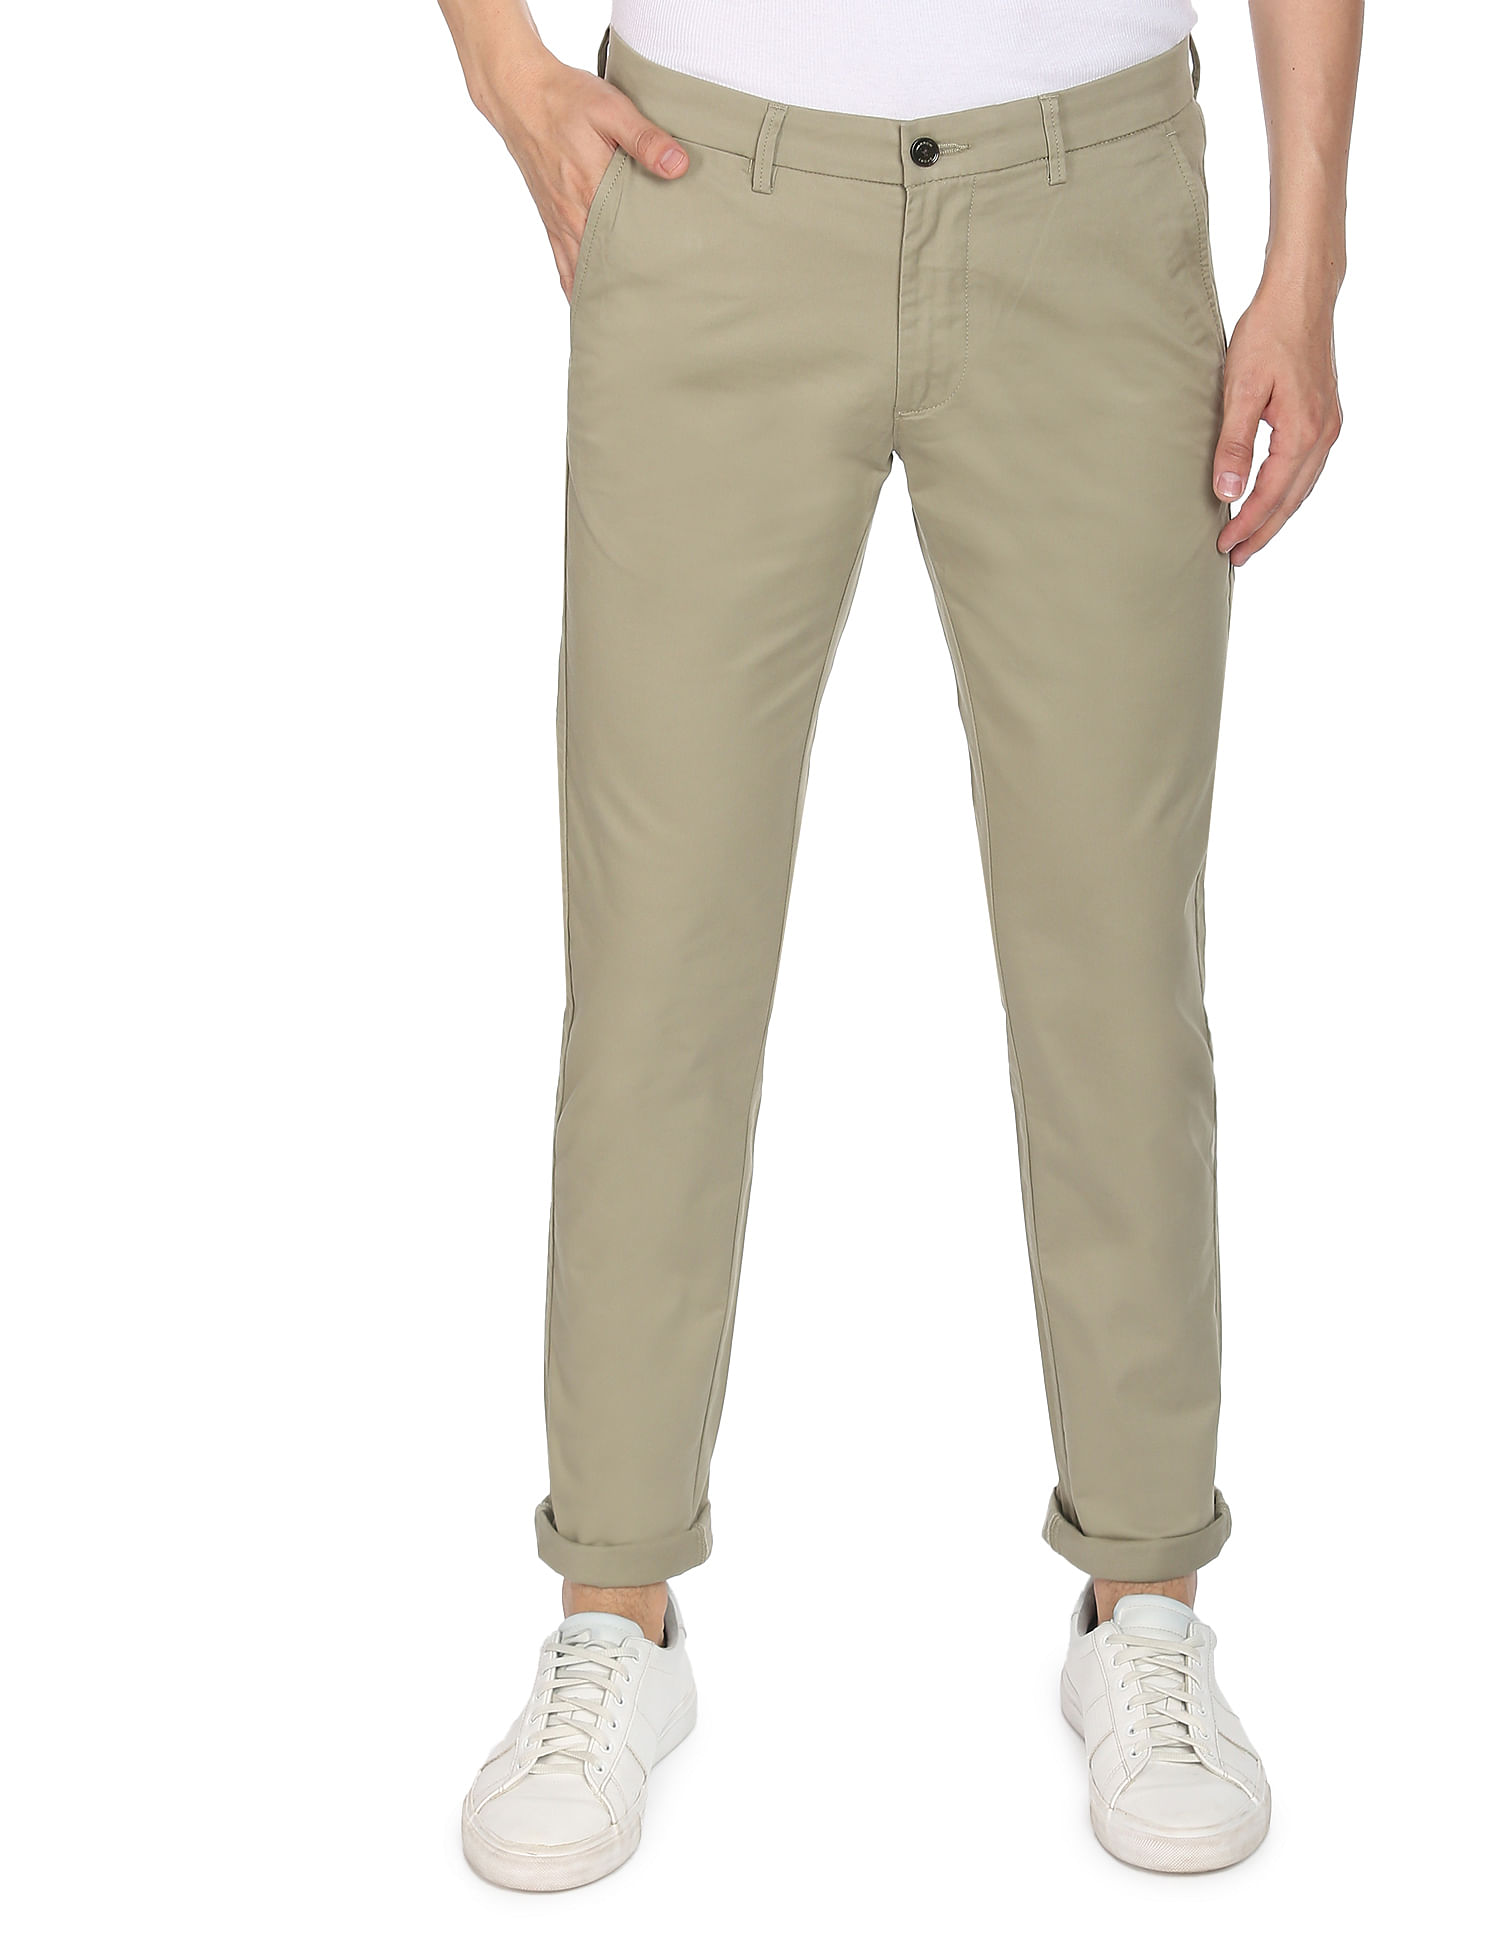 ARROW Slim Fit Men Beige Trousers  Buy ARROW Slim Fit Men Beige Trousers  Online at Best Prices in India  Flipkartcom